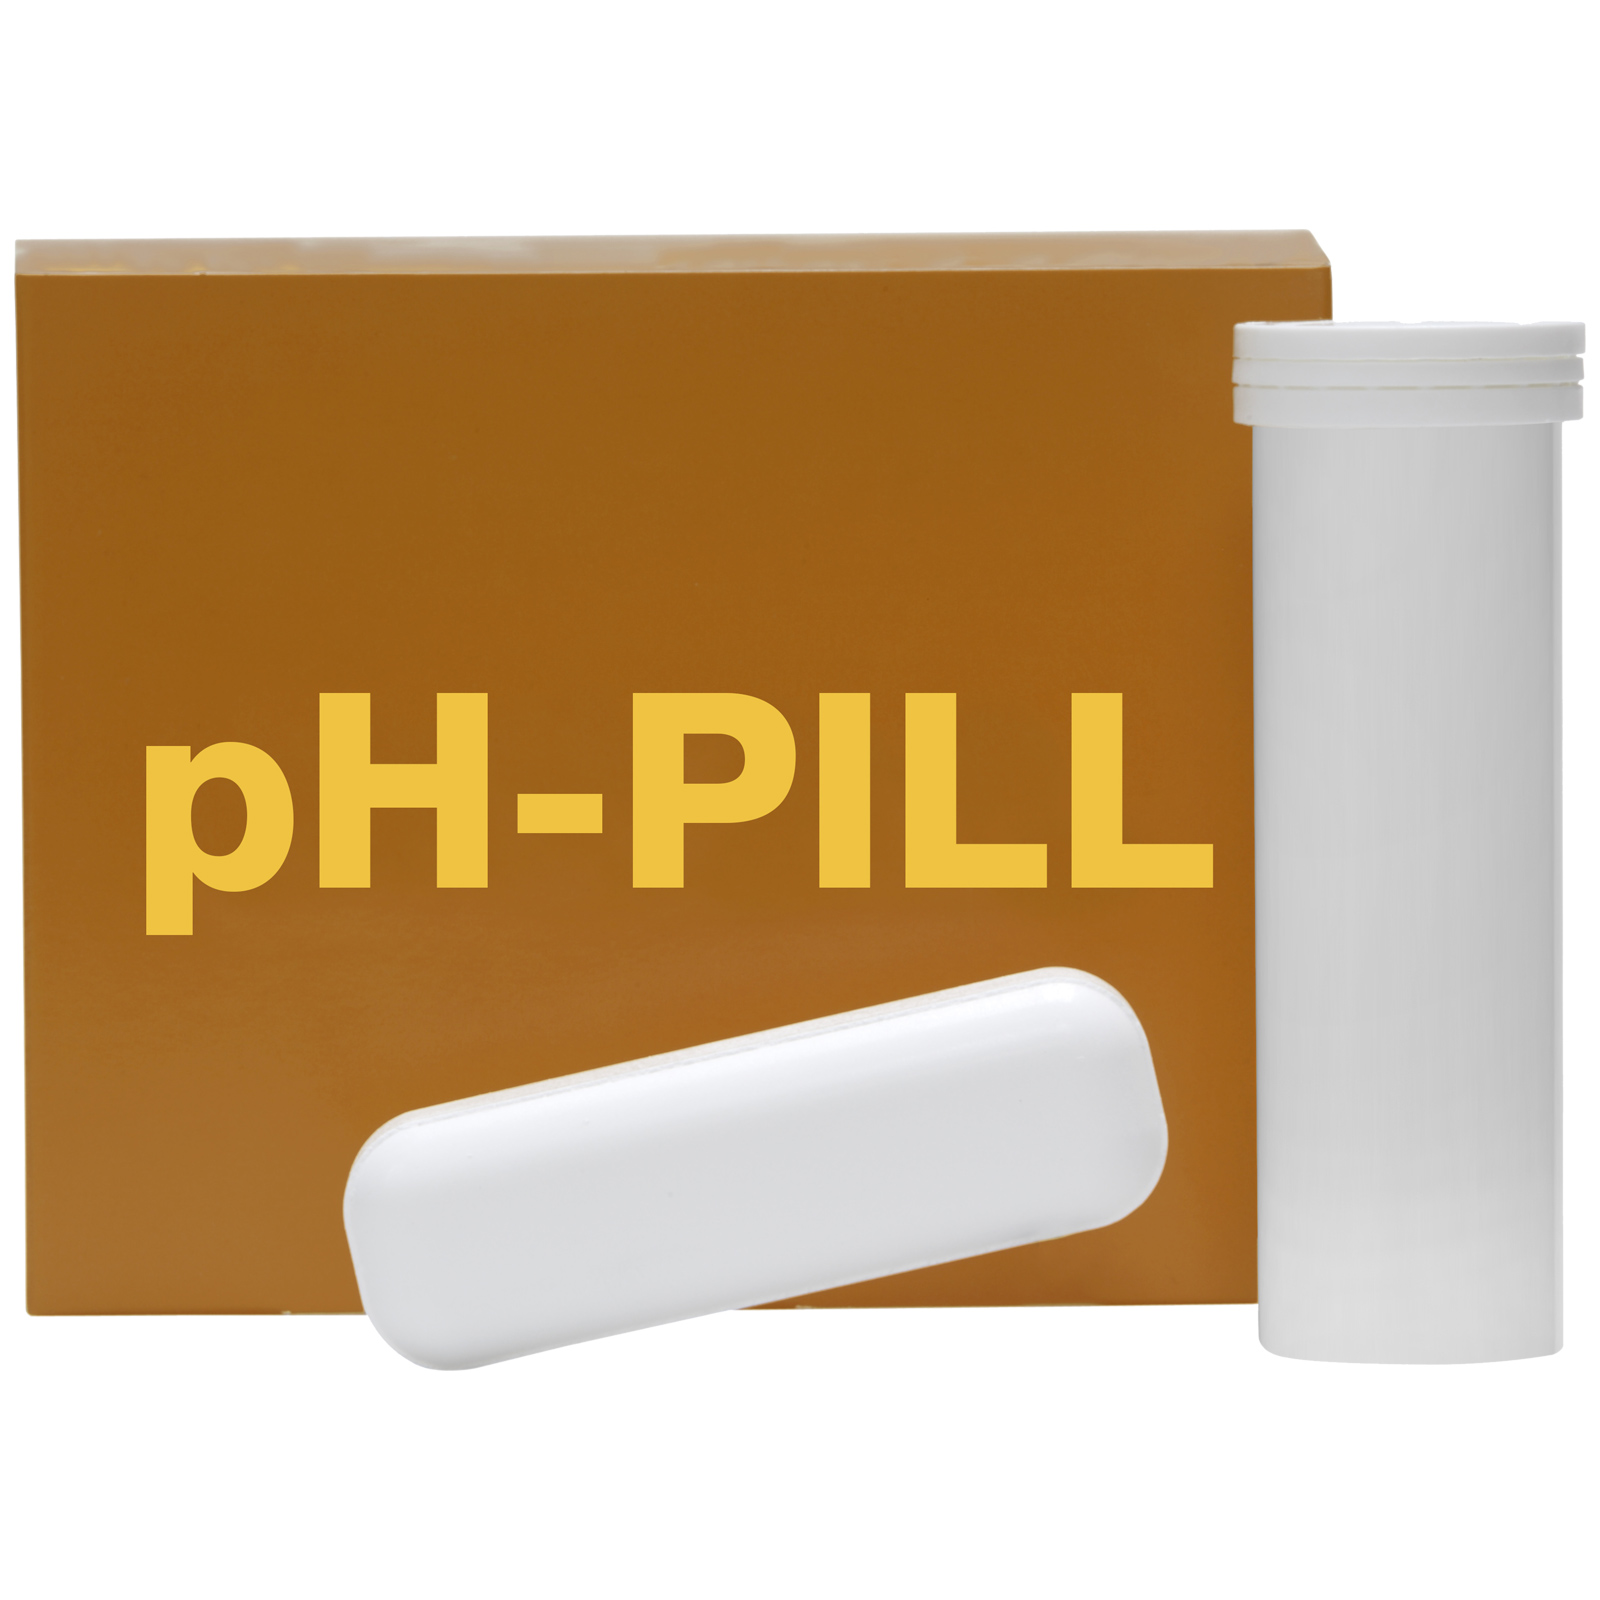 pH-PILL Integratore contro l'acidosi ruminale nei bovini 4 x 120 g